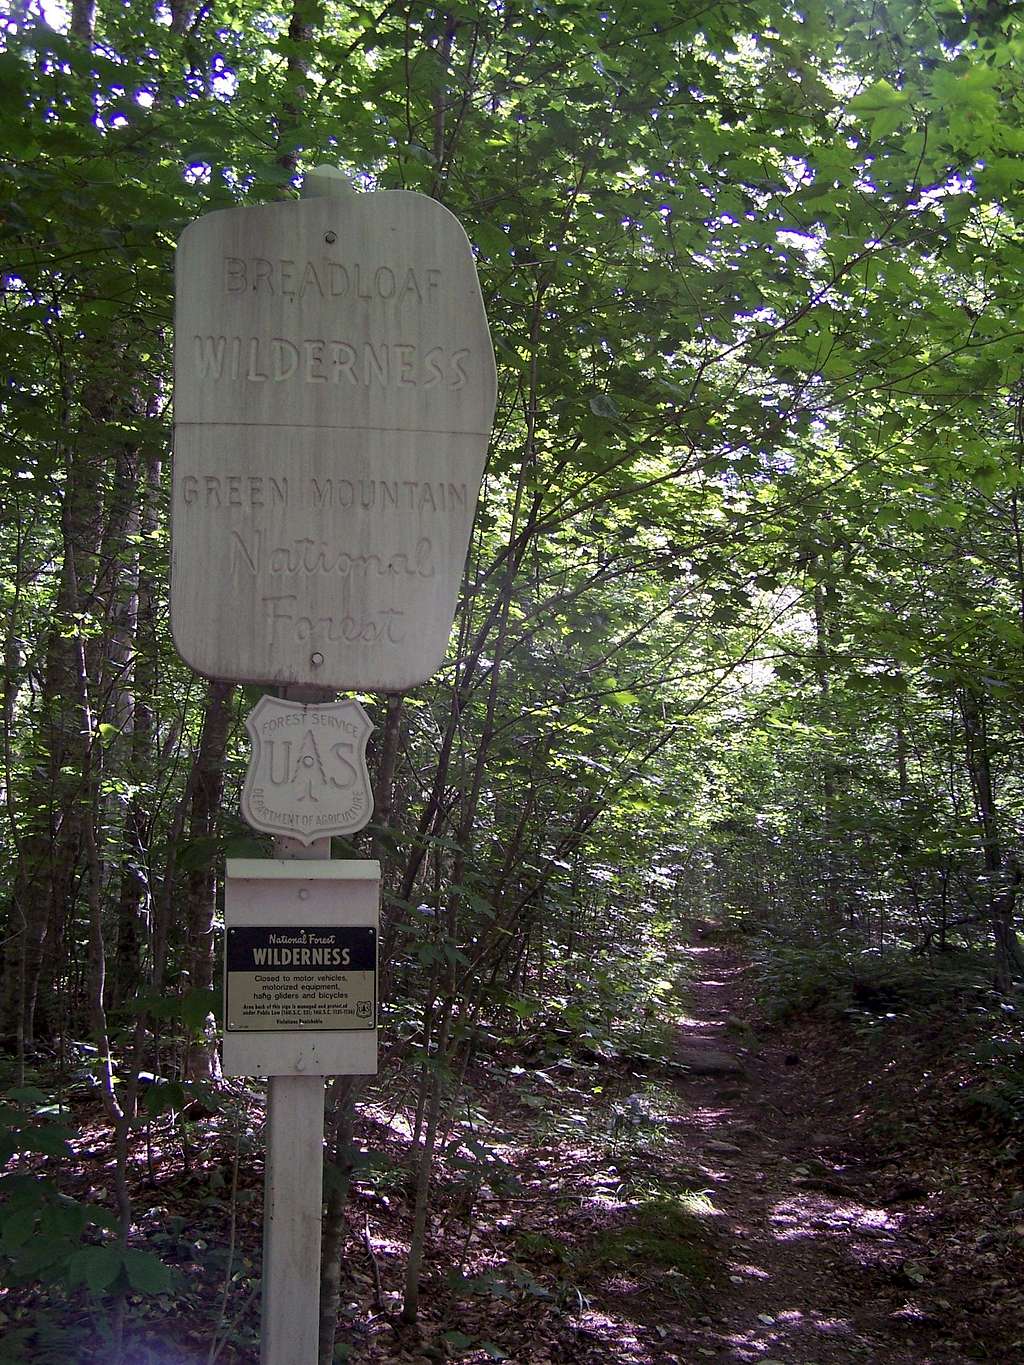 Breadloaf Wilderness Entrance Sign